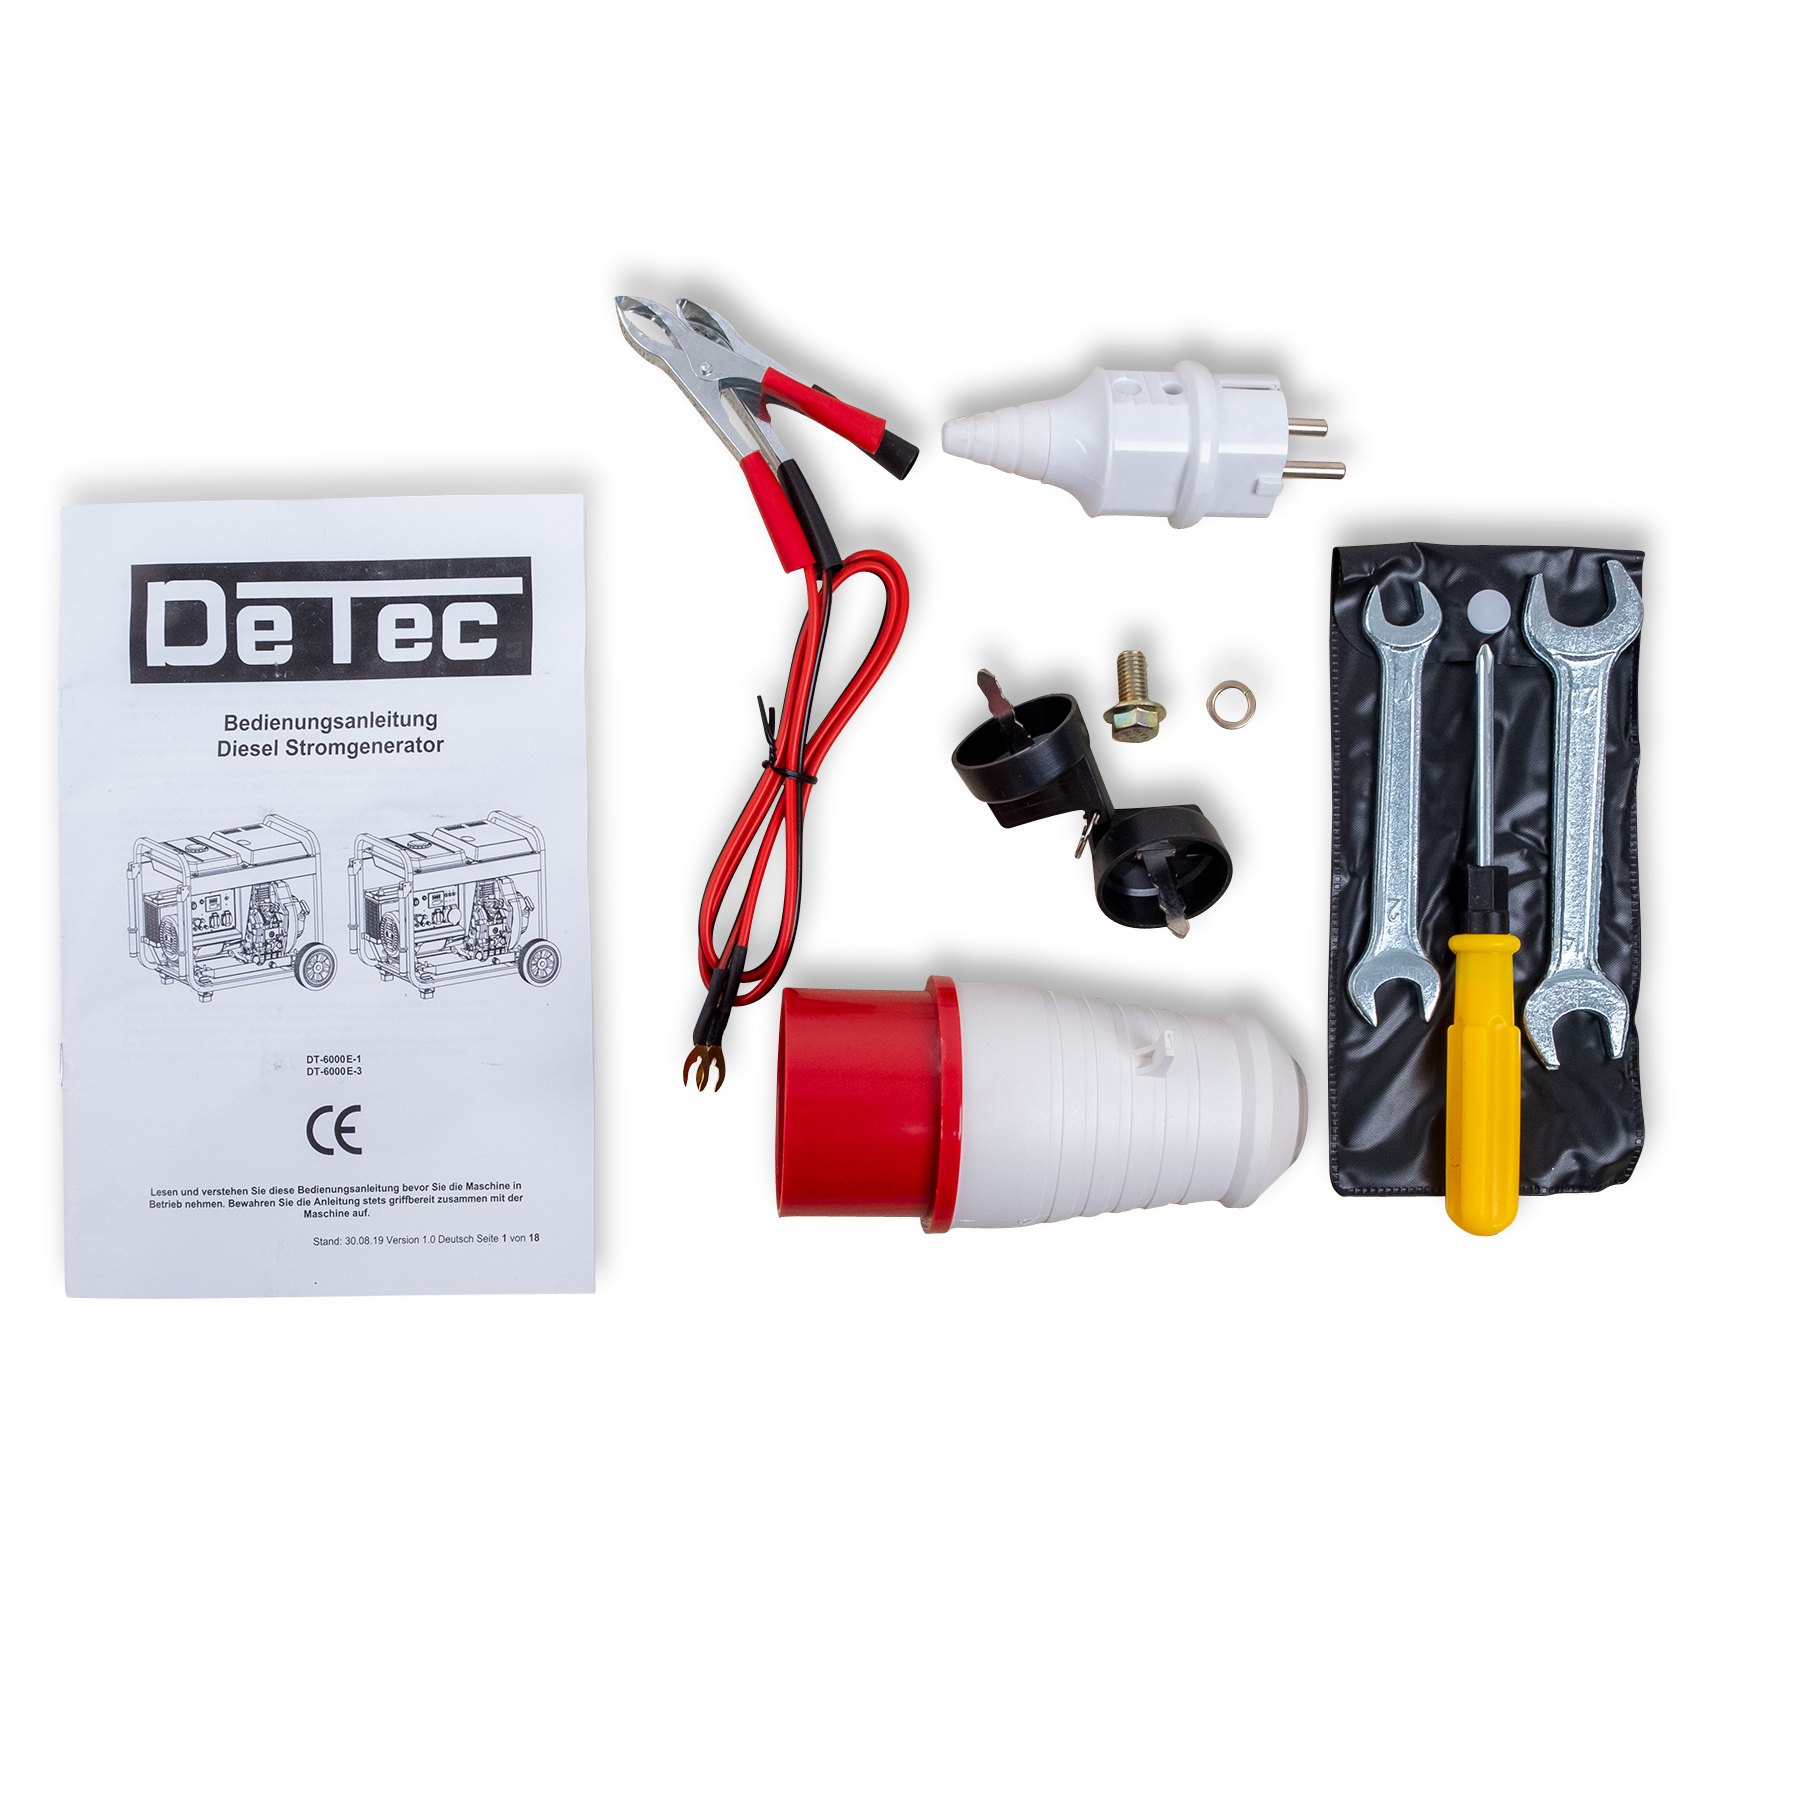 DeTec. 3-Phasen Dieselgenerator DT-6000E-3